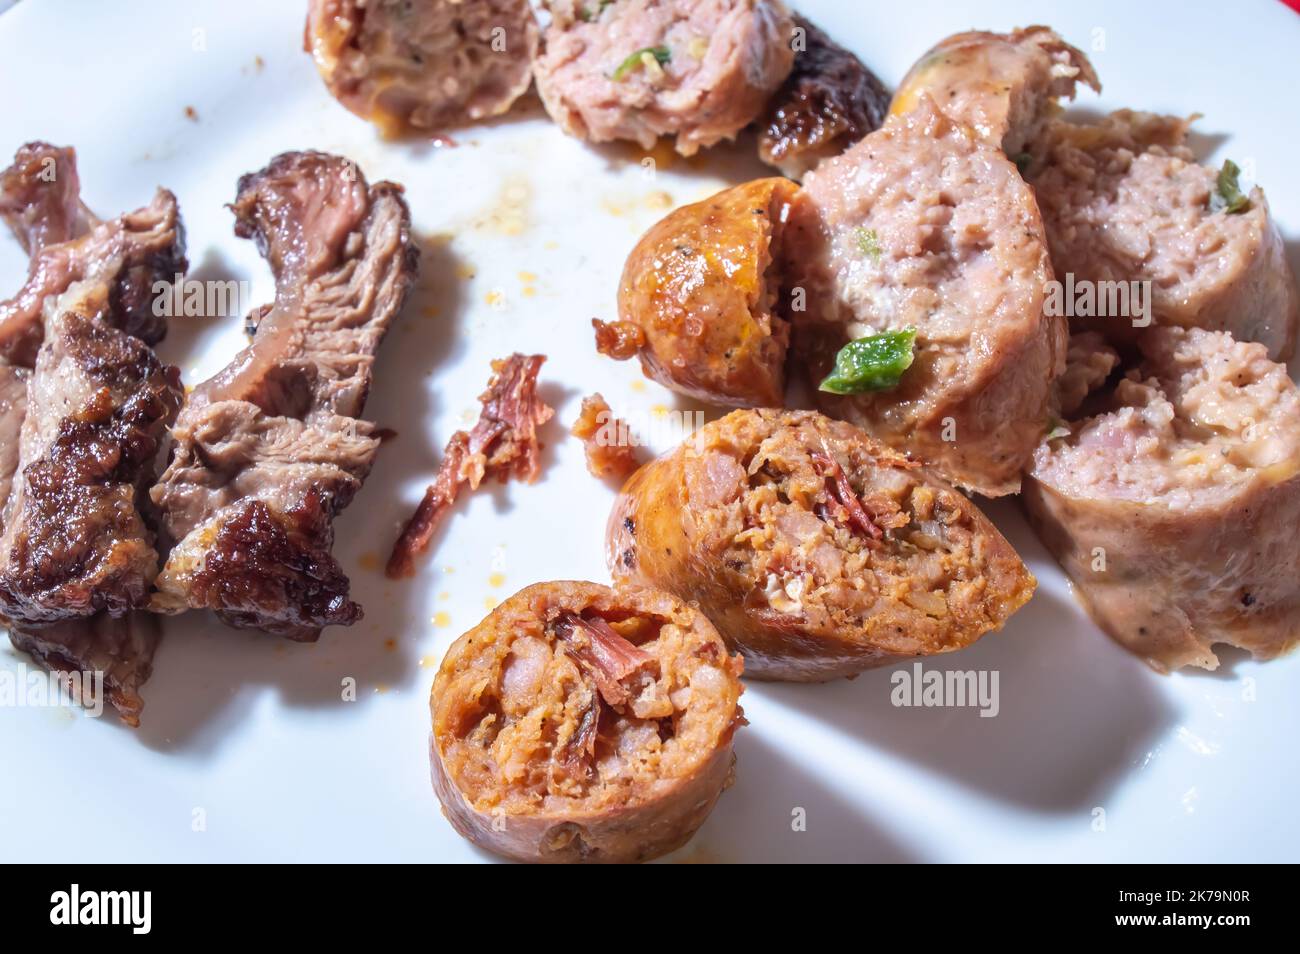 La saucisse rôtie et coupée en tranches sur un plat blanc avec de petits morceaux de viande à côté de la saveur de saucisse est pastrami. Banque D'Images